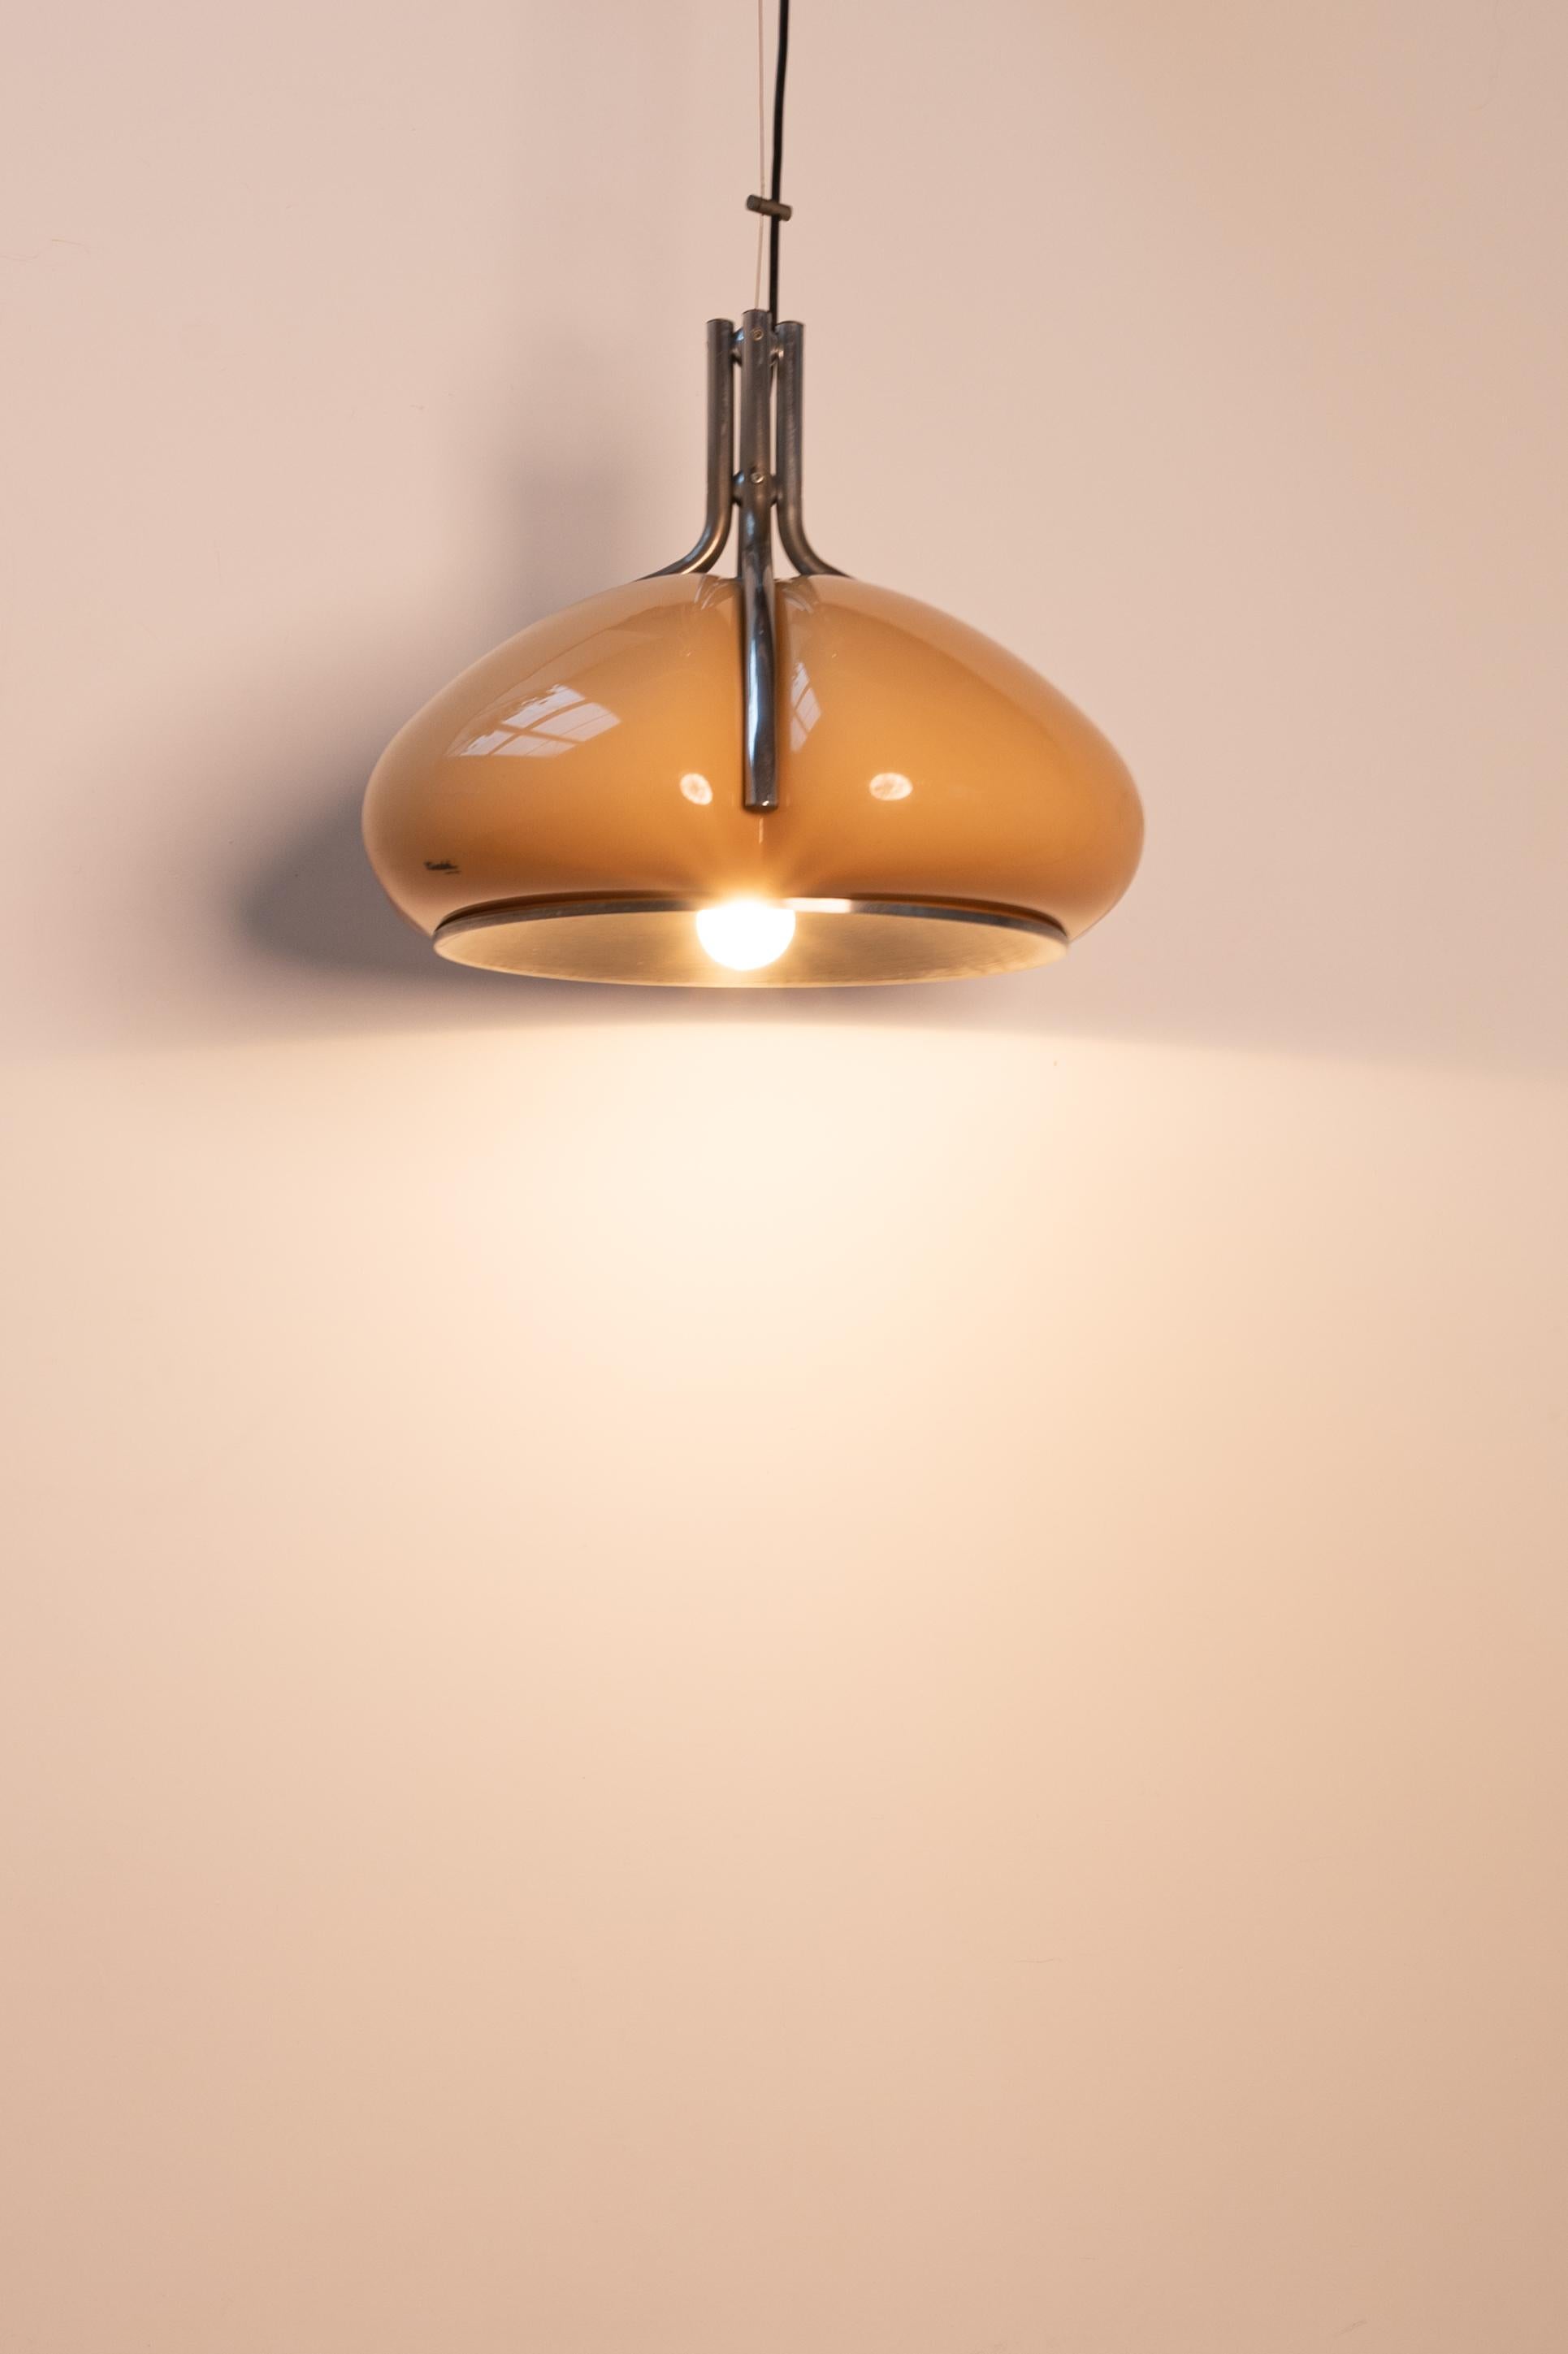 Lampe iconique, réalisée par Studio 6G, l'équipe de designers de Guzzini dirigée par Luigi Massoni.